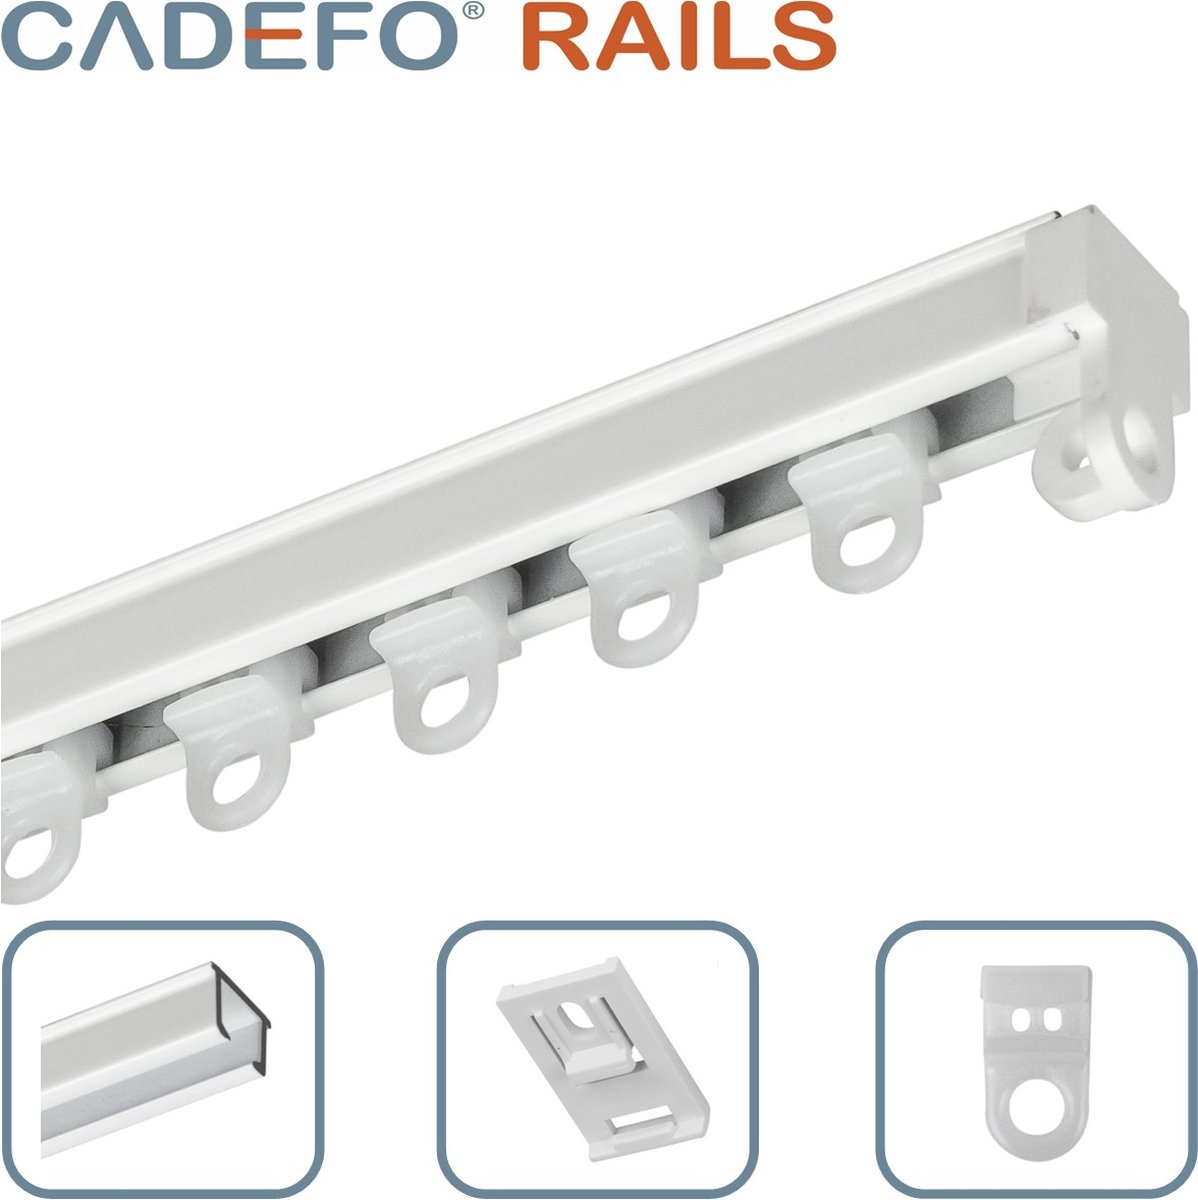 CADEFO RAILS (251 - 300 cm) Gordijnrails - Compleet op maat! - UIT 1 STUK - Leverbaar tot 6 meter - Plafondbevestiging - Lengte 289 cm